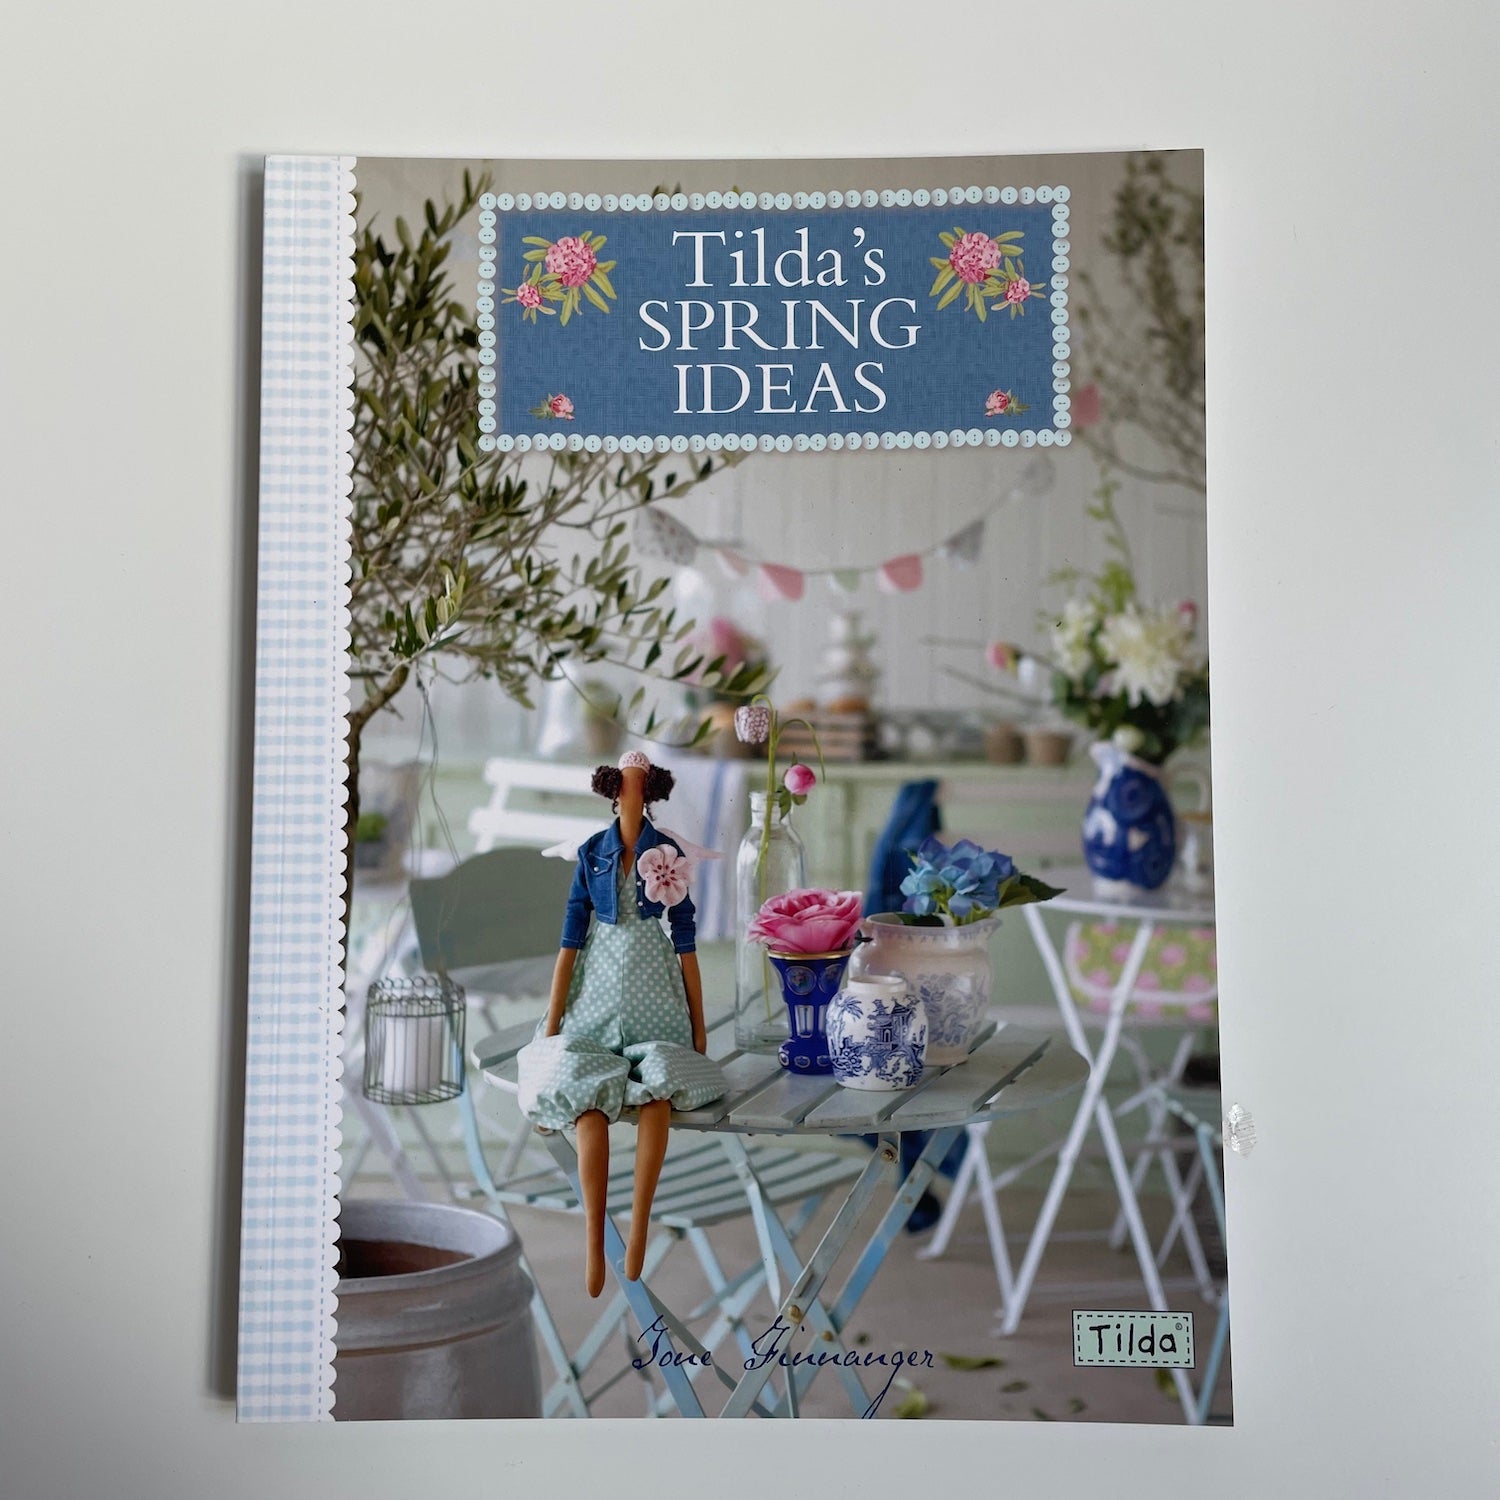 Tilda's Spring Ideas - Tone Finnanger